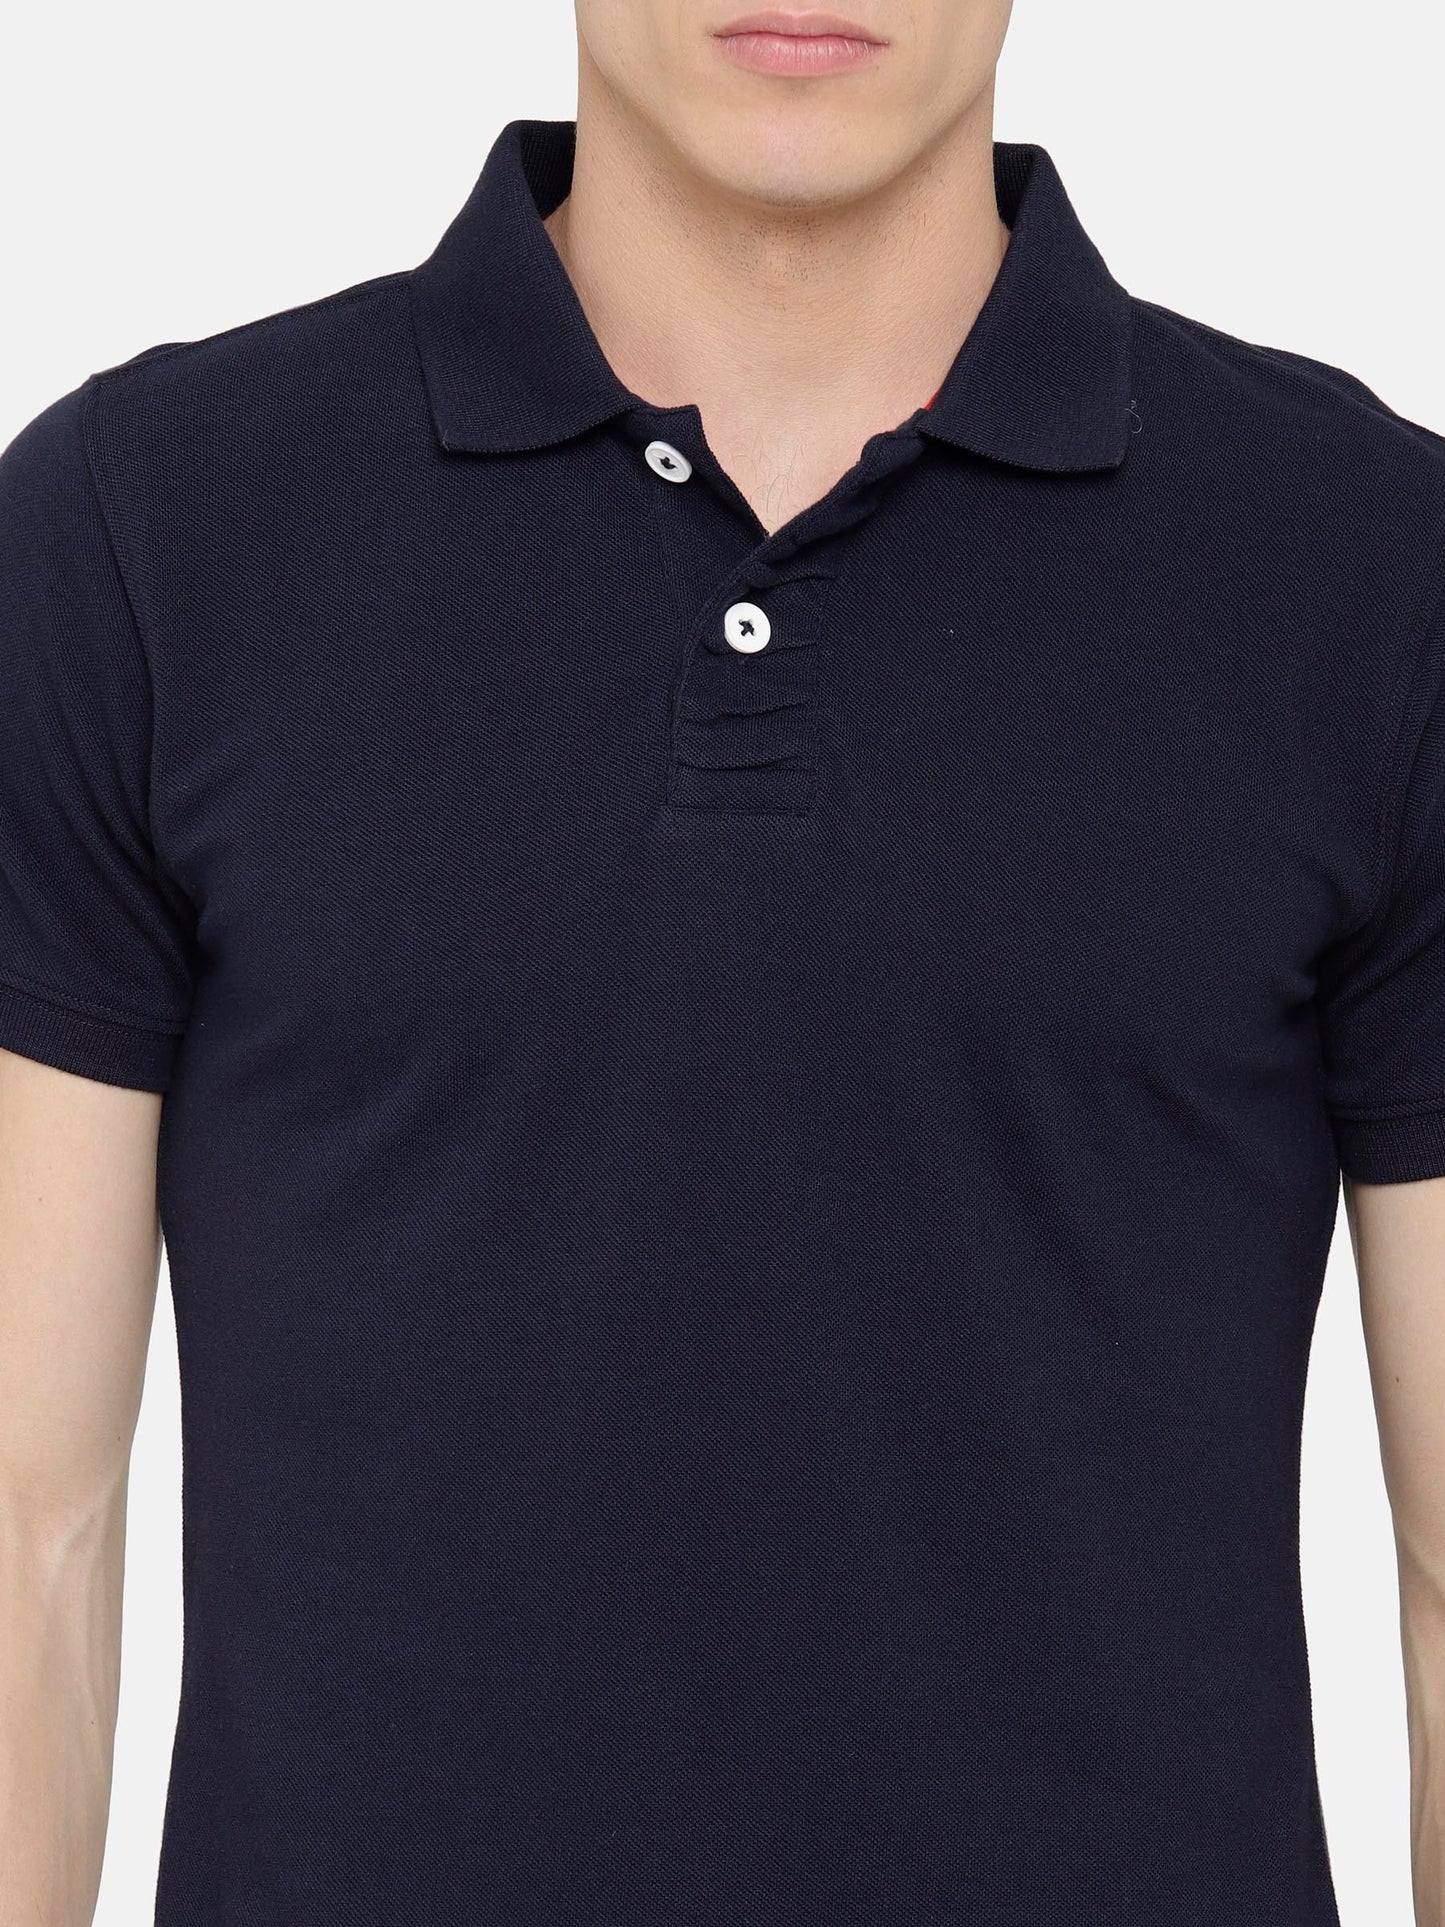 Navy color Polo T-Shirt pique